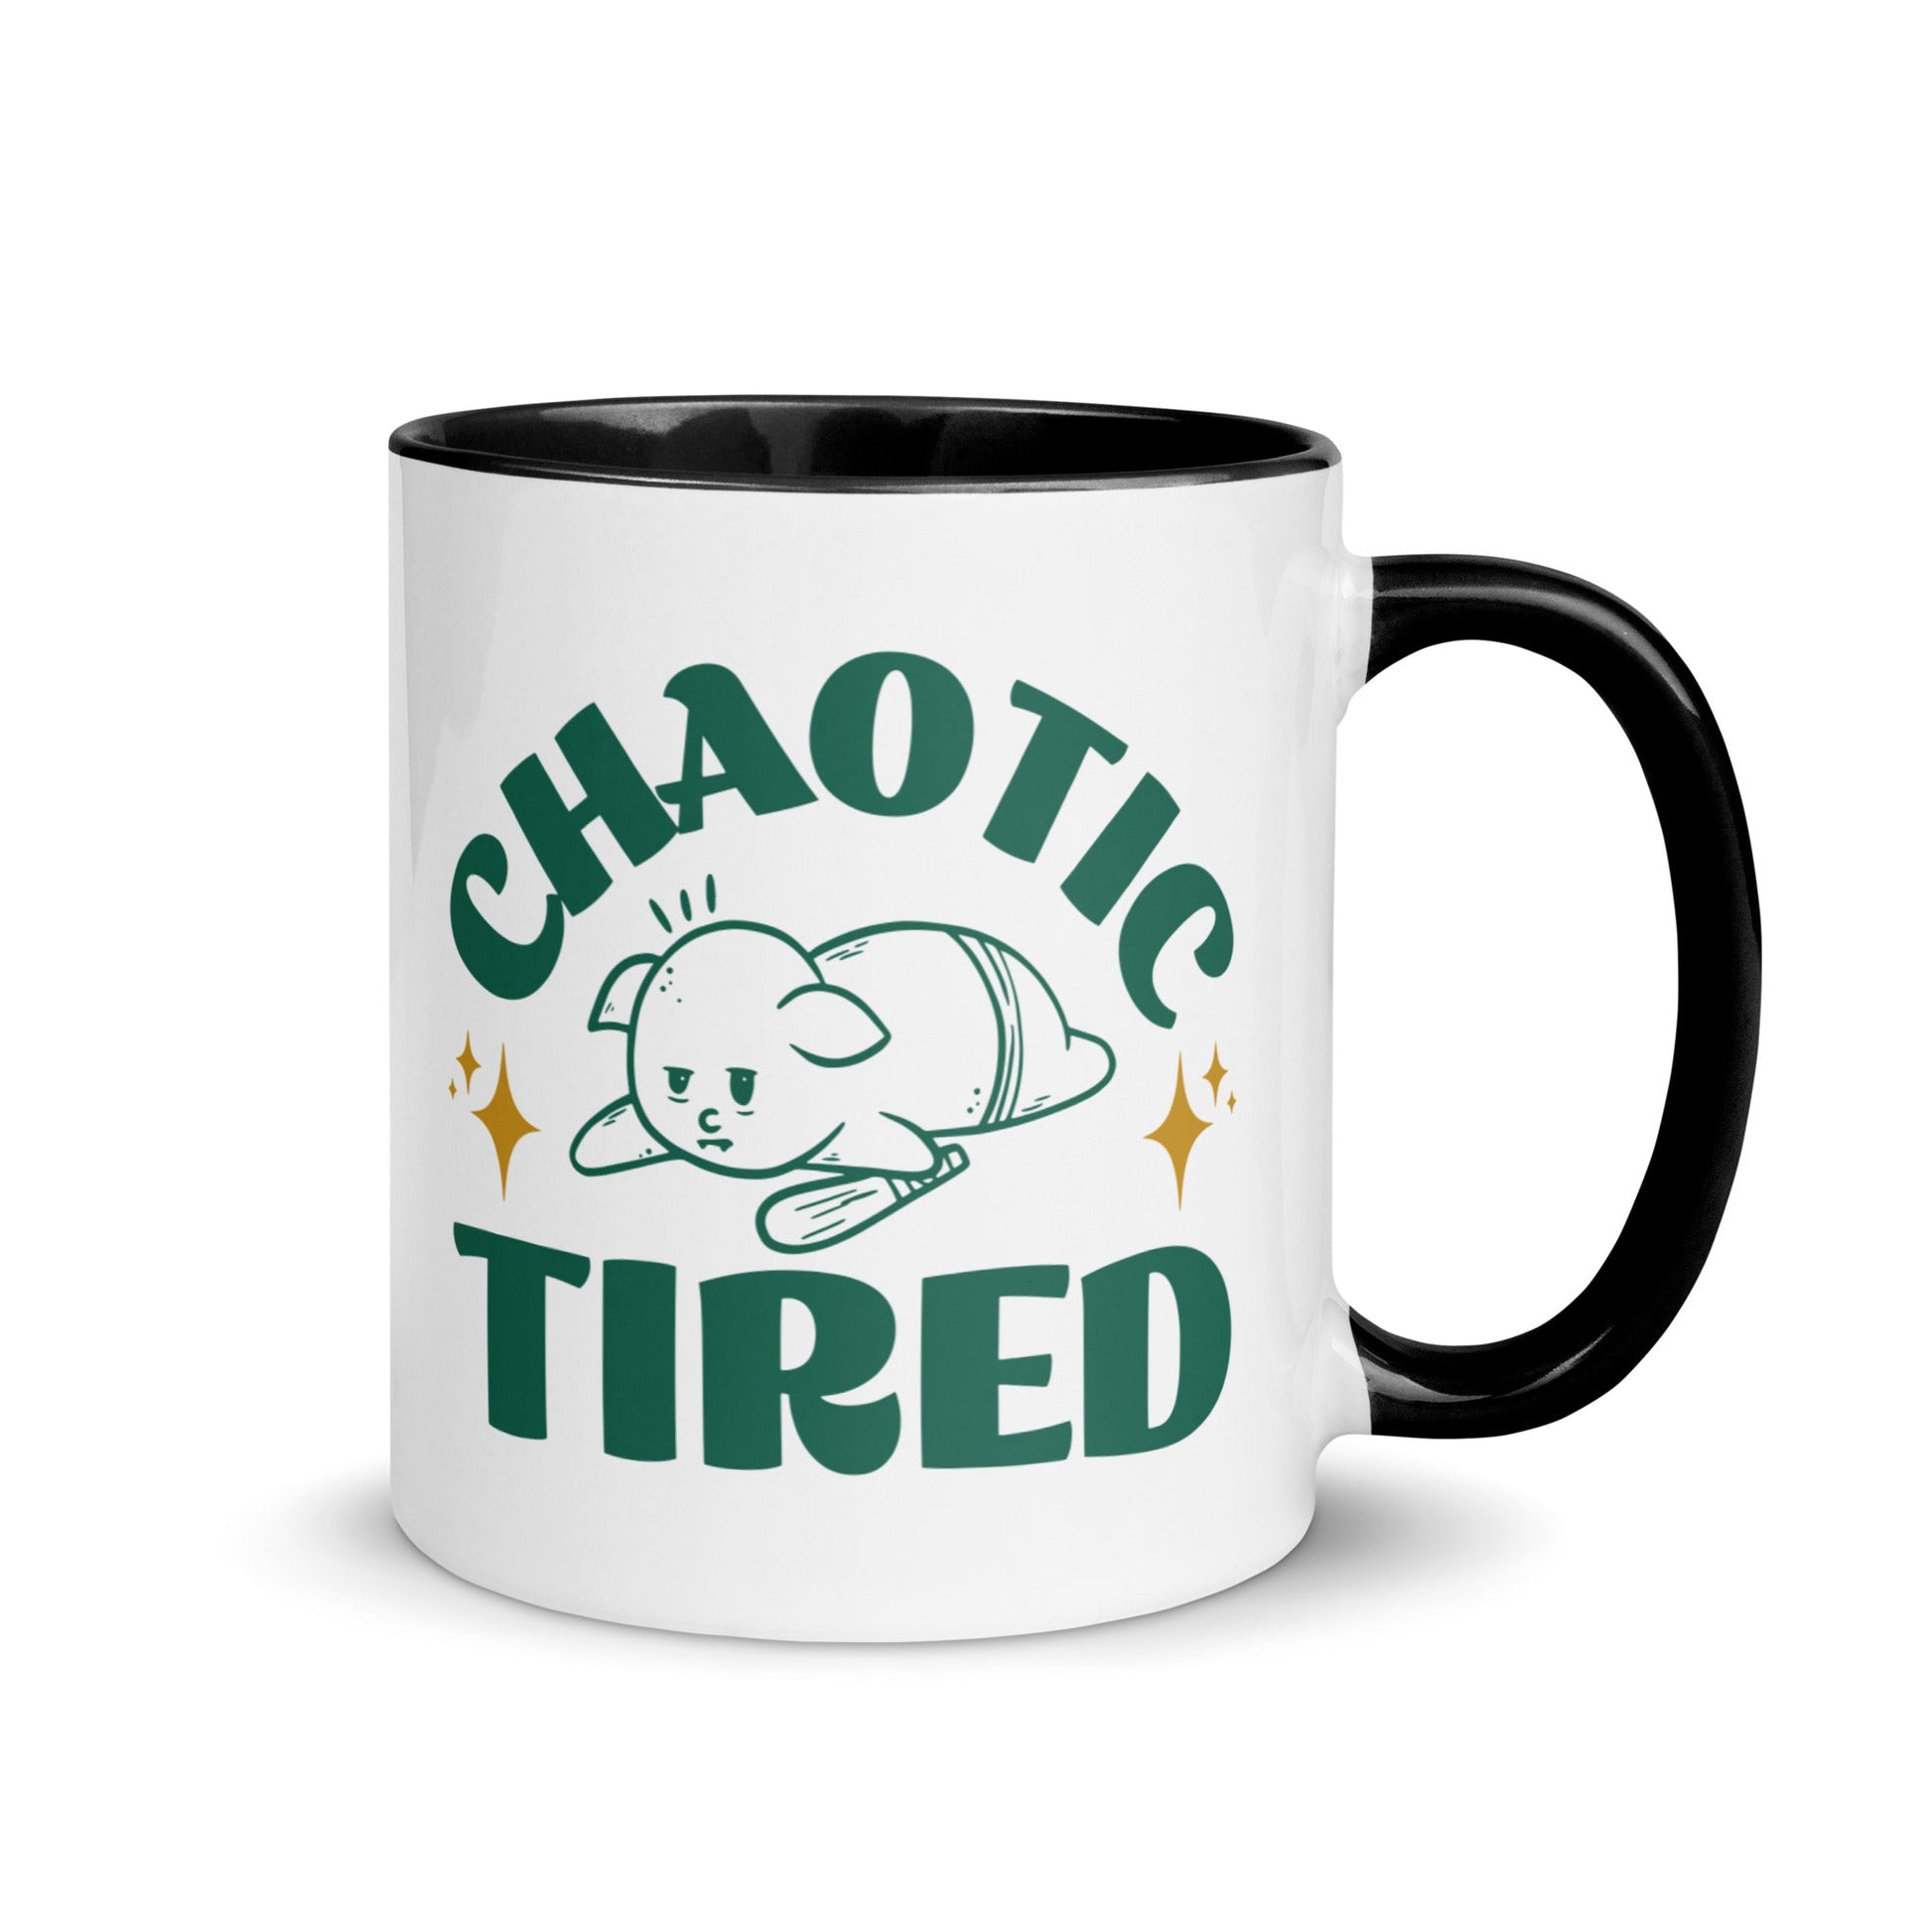 Chaotic Tired Mug - Funny Coffee Mug for Tired Goblins Mug Black / 11 oz